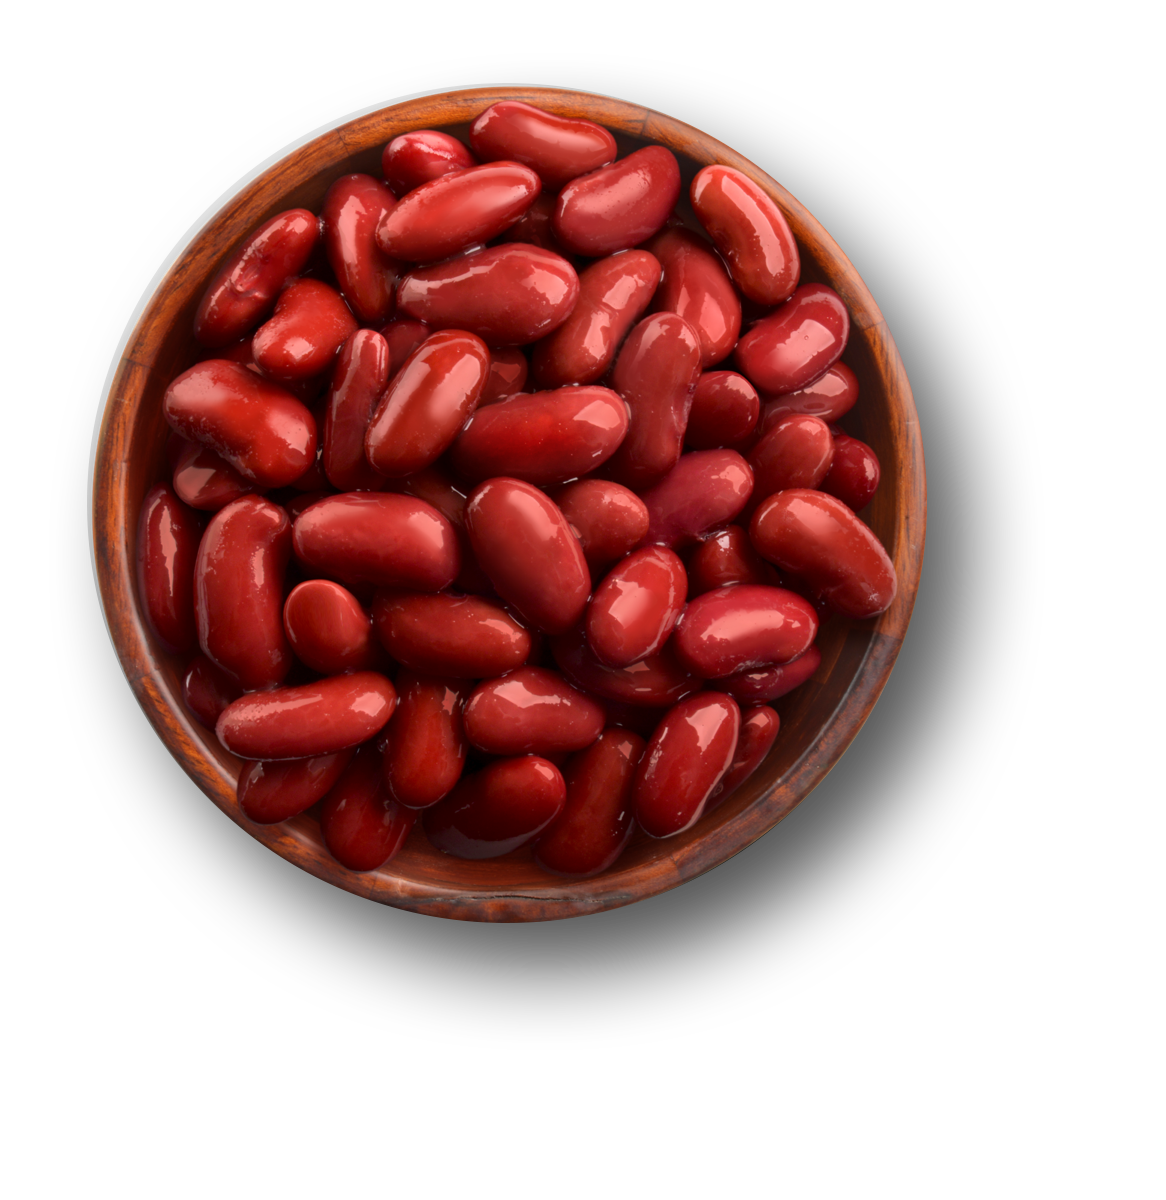 Kidney dry bean